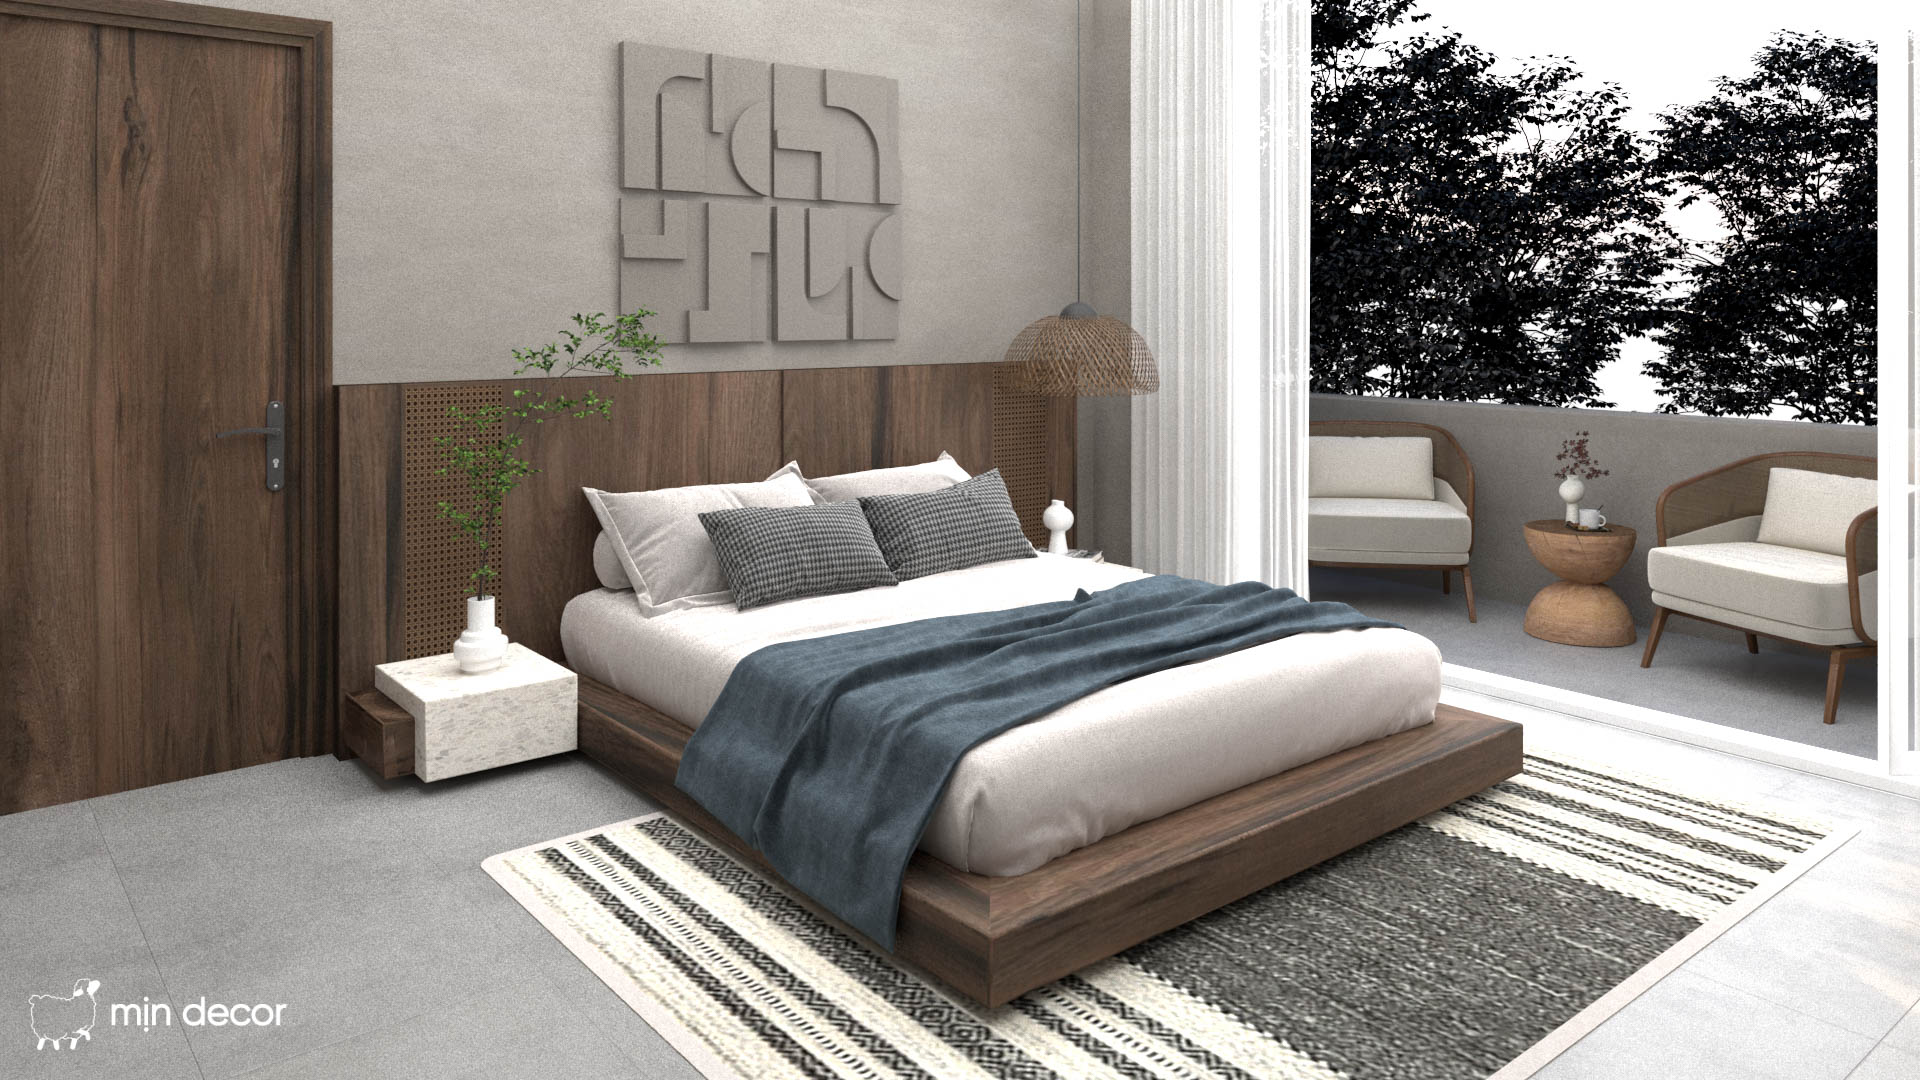 Những quy tắc thiết kế phòng ngủ đem lại cho bạn giấc ngủ chất lượng 